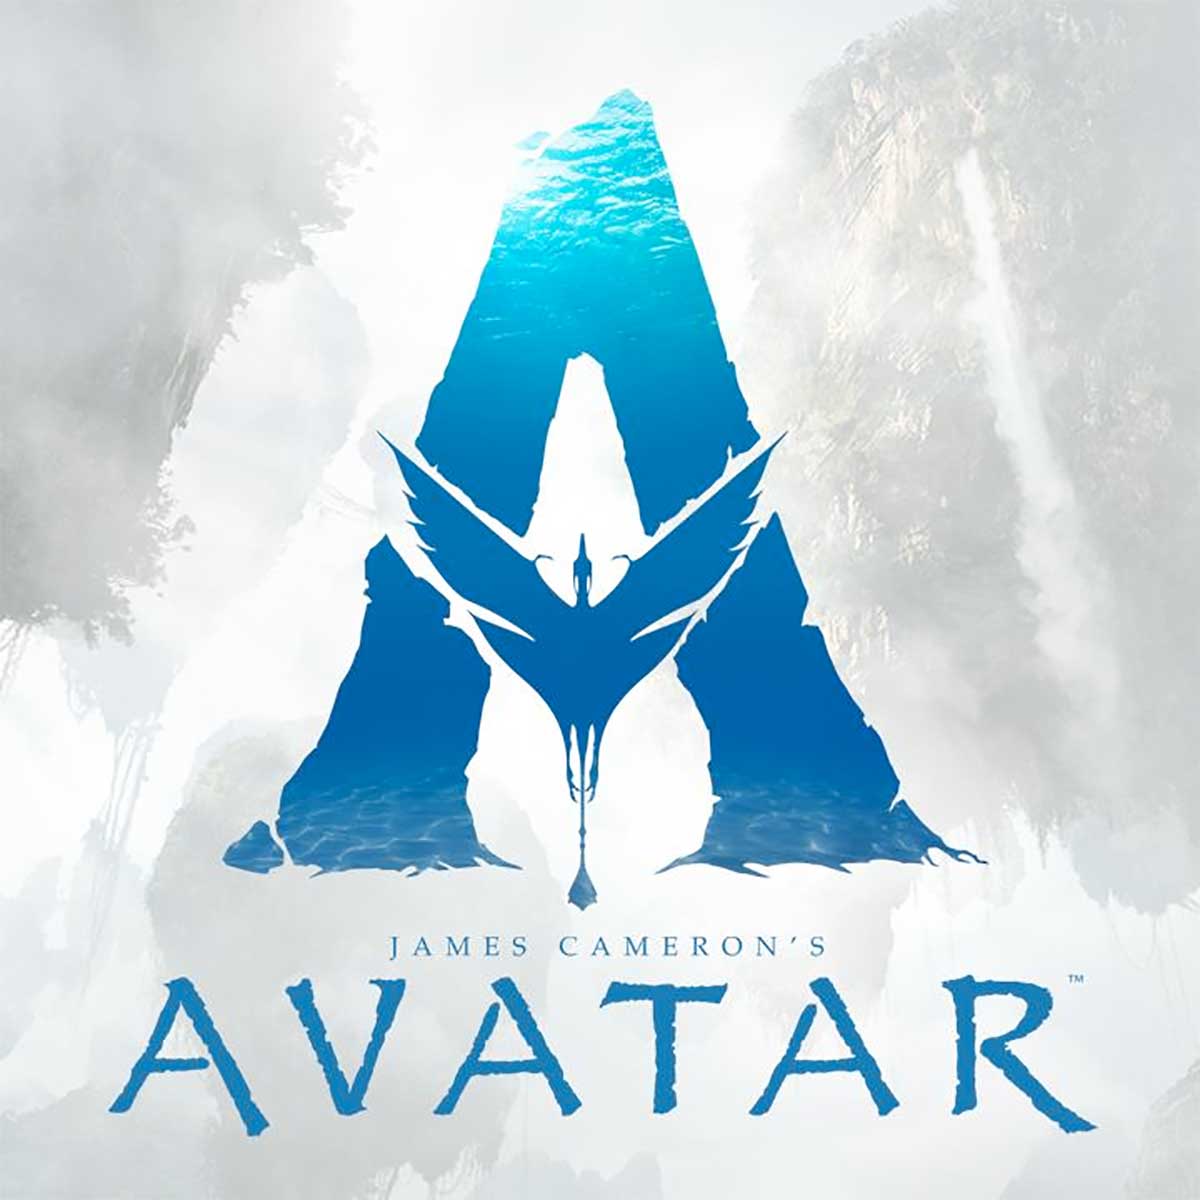 James Cameron Avatar müjdesini verdi. 4 film daha geliyor!